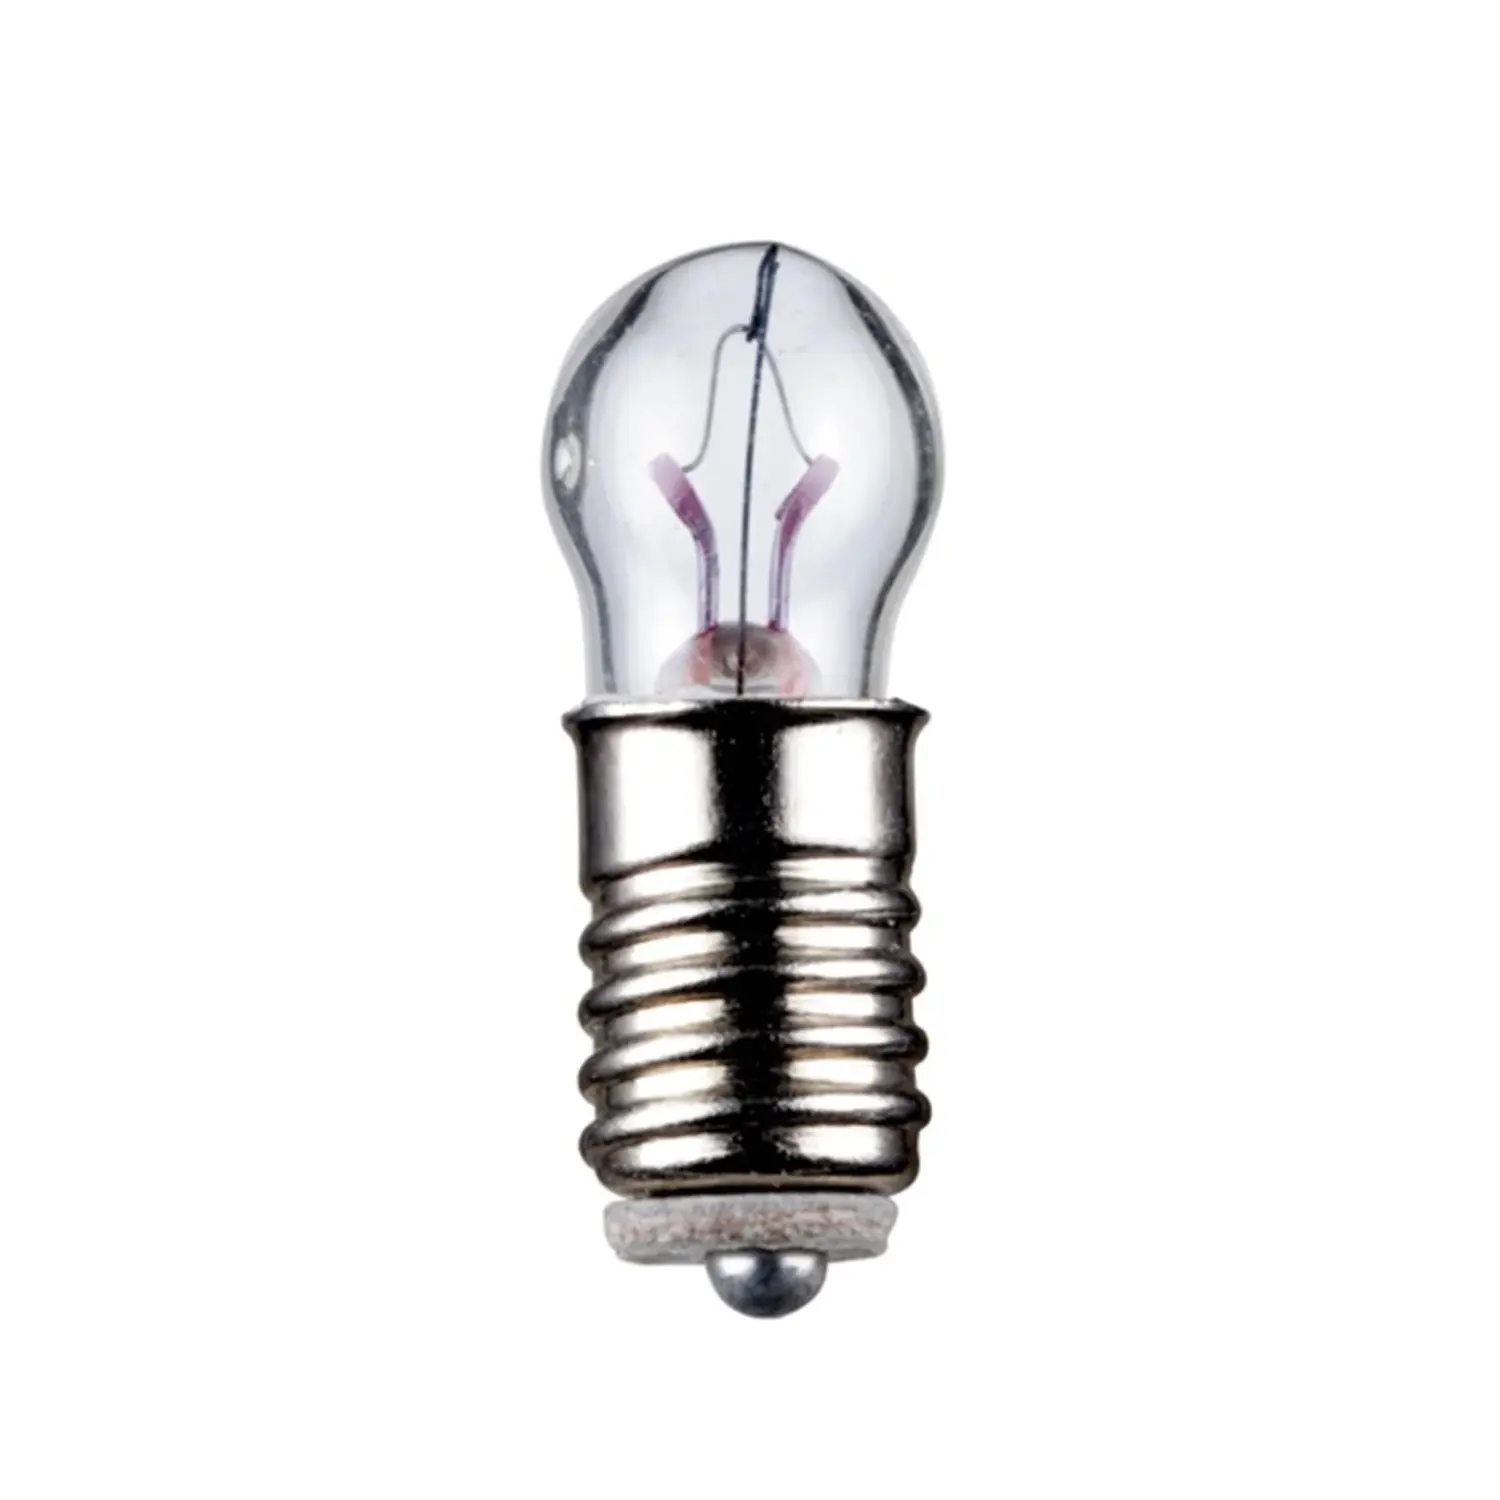 immagine del prodotto lampadina in miniatura modellismo treno e5.5 0,70 watt 3,5 volt